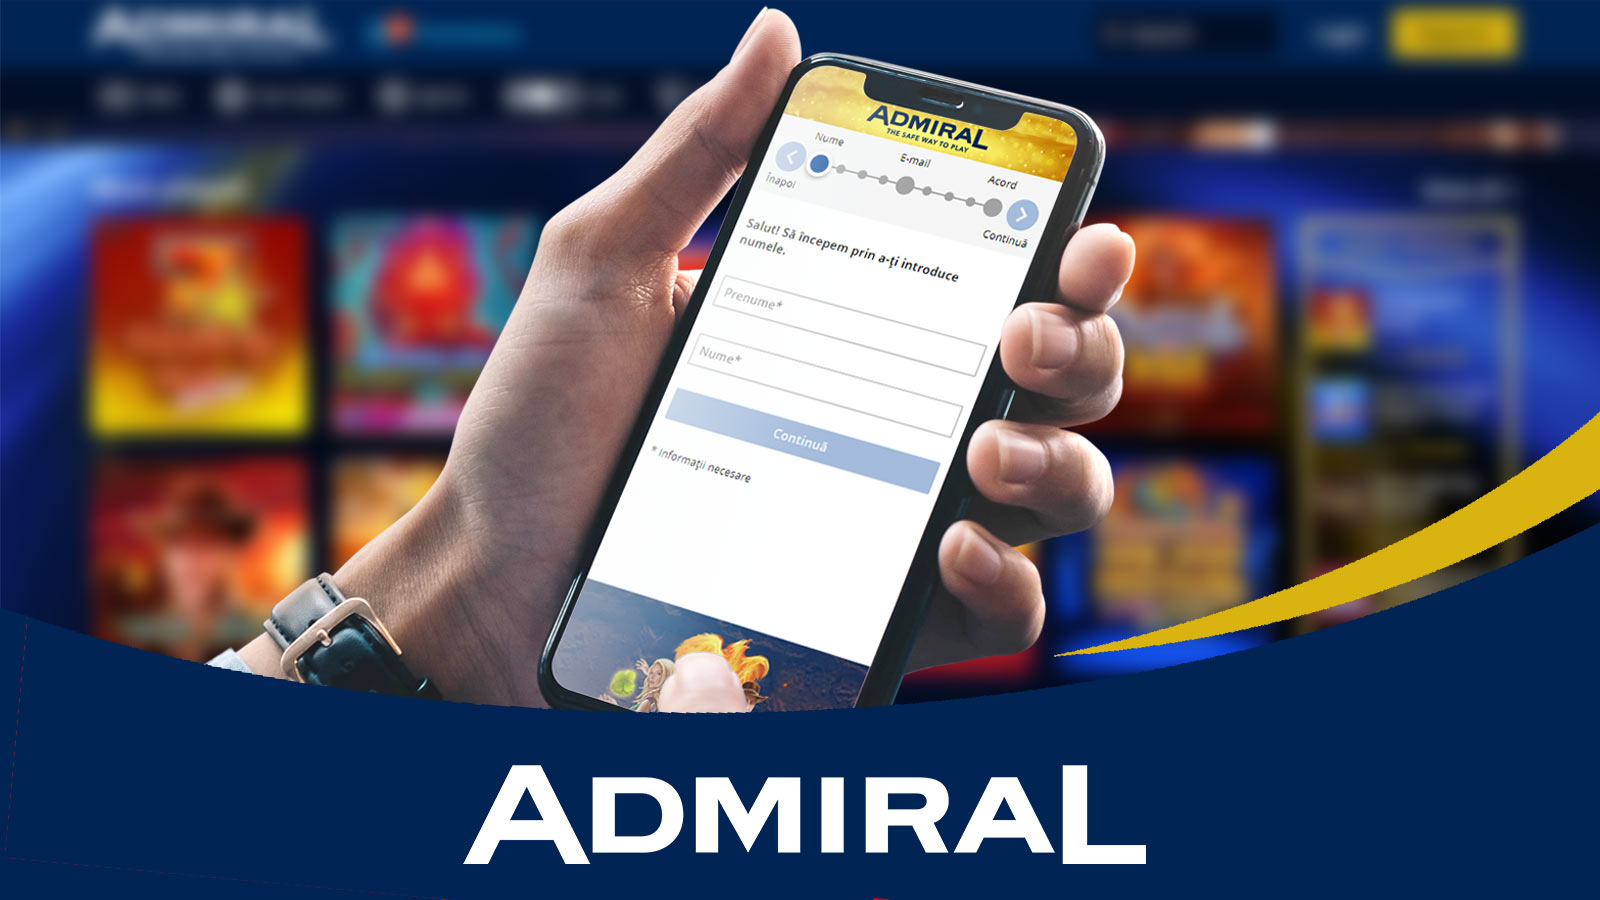 Admiral Înregistrare - Cum Îți Deschizi Un Cont?